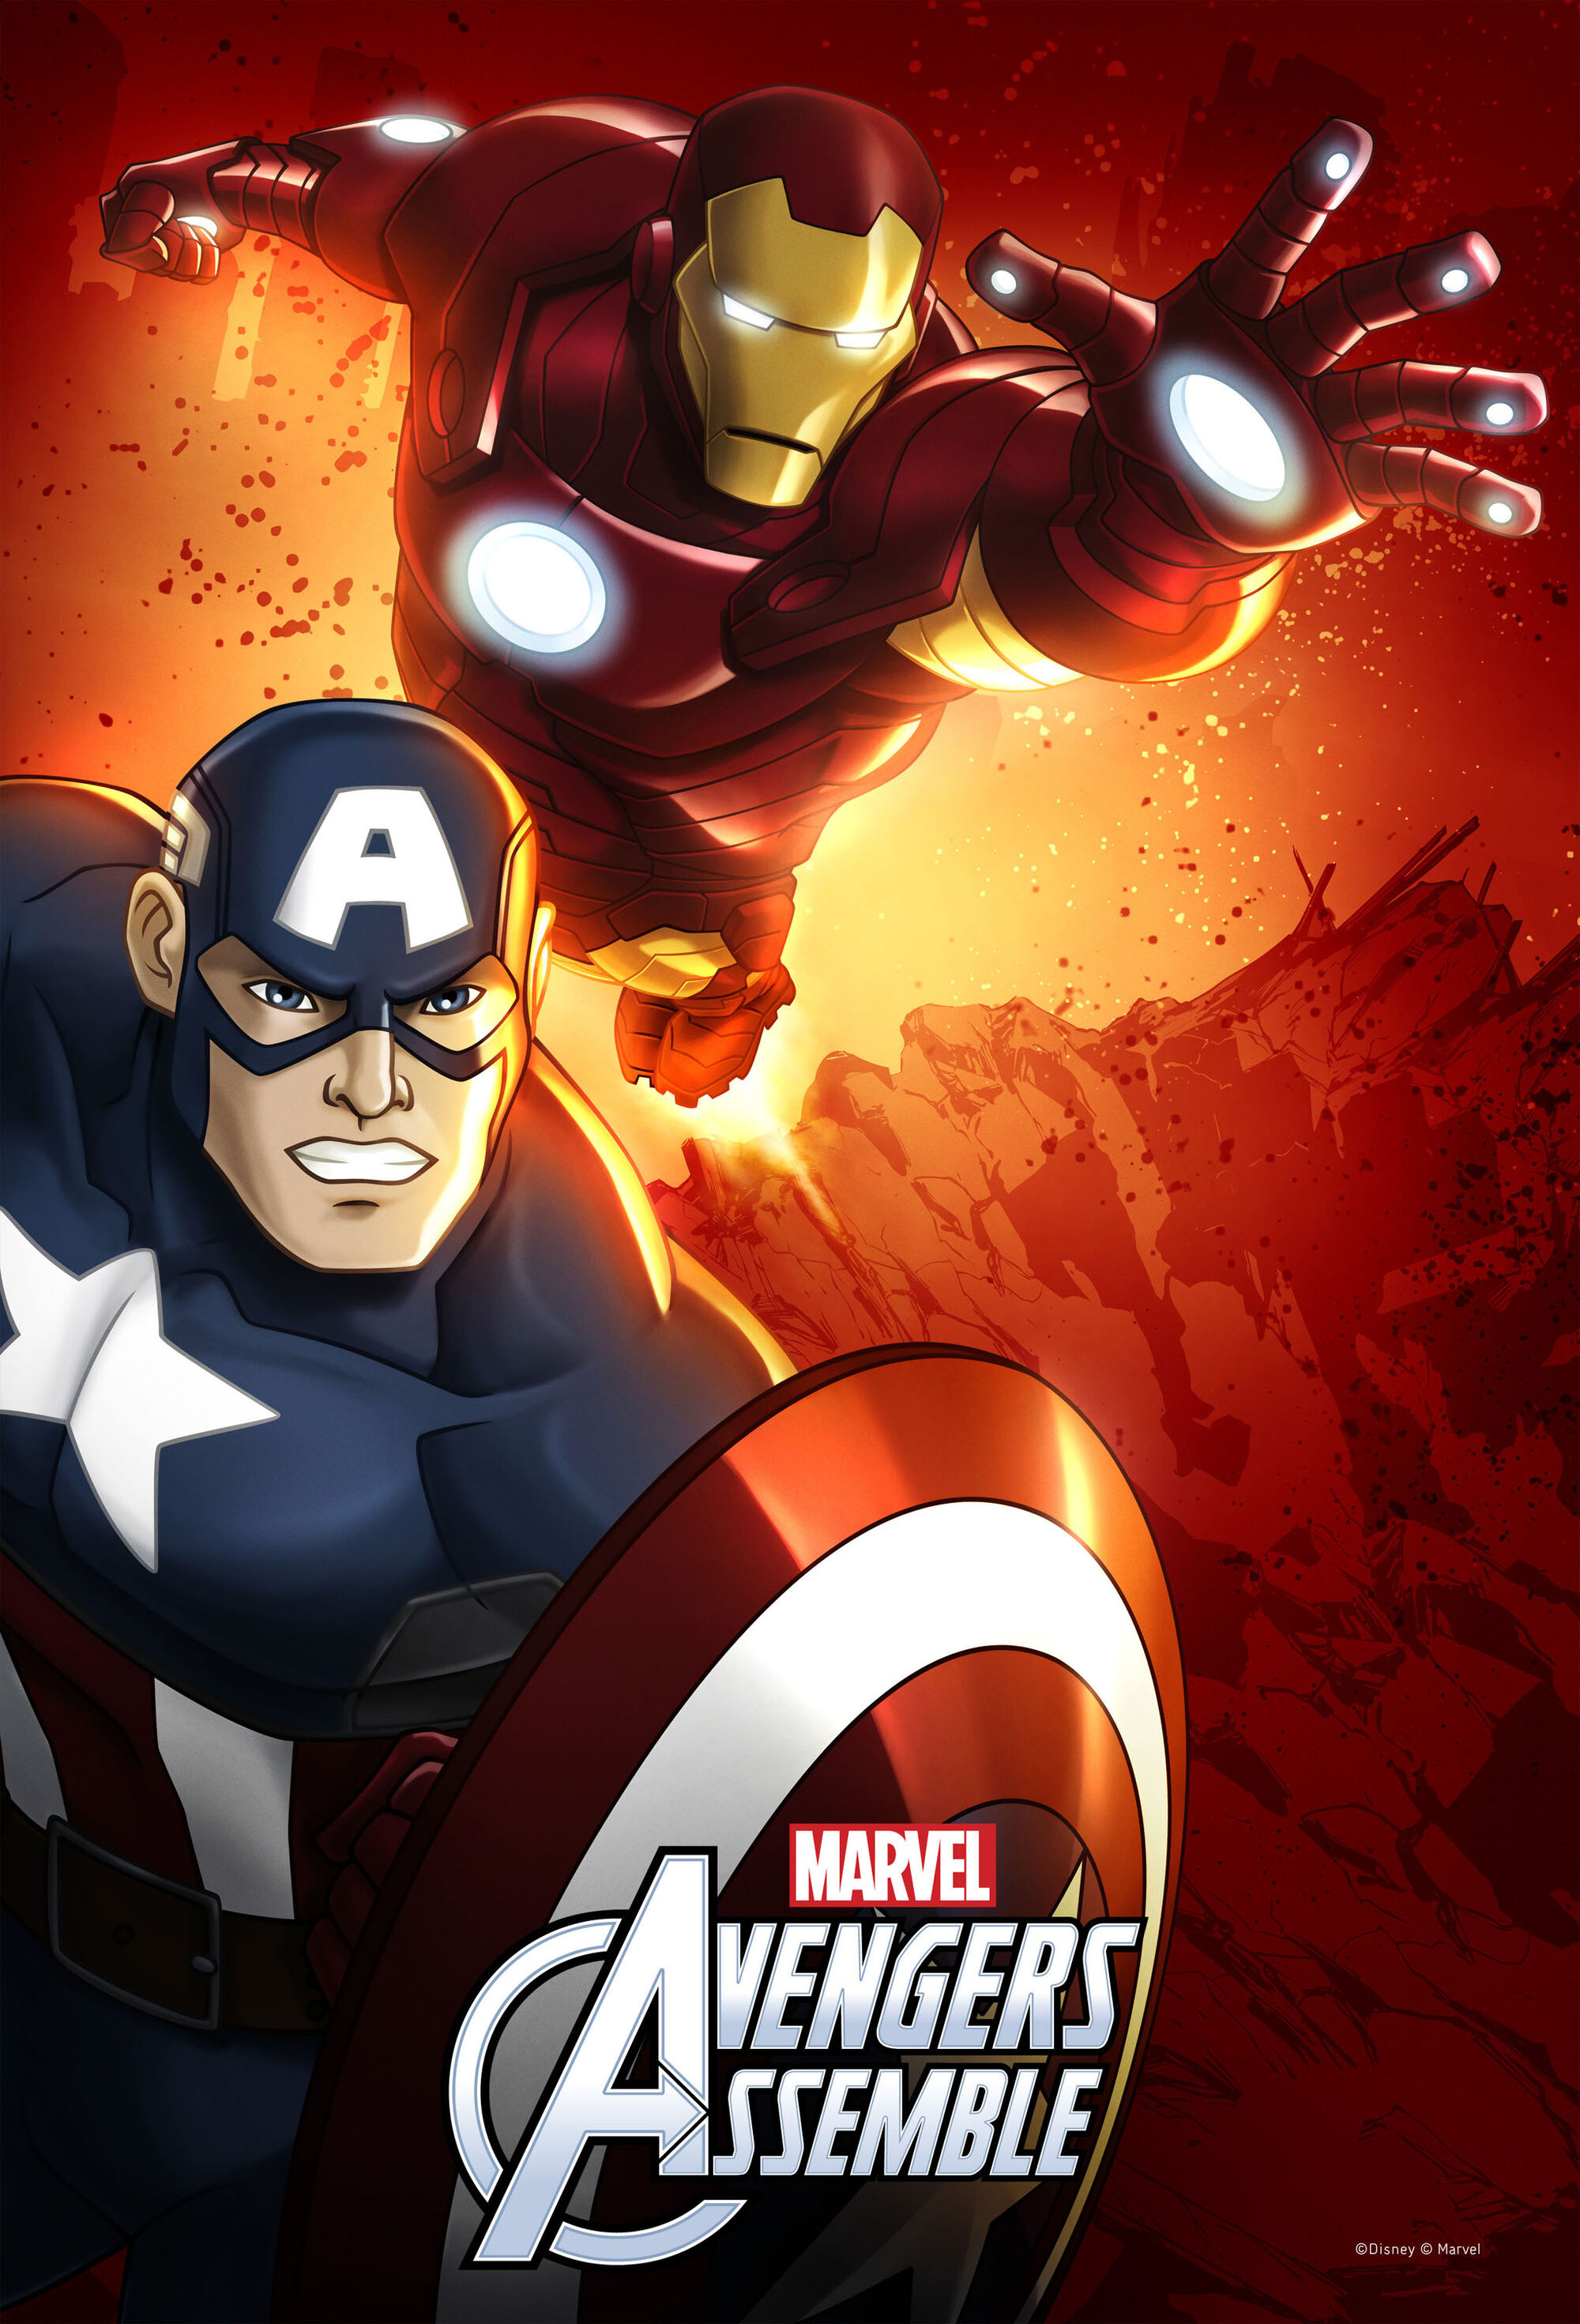 Marvel Avengers assemble.